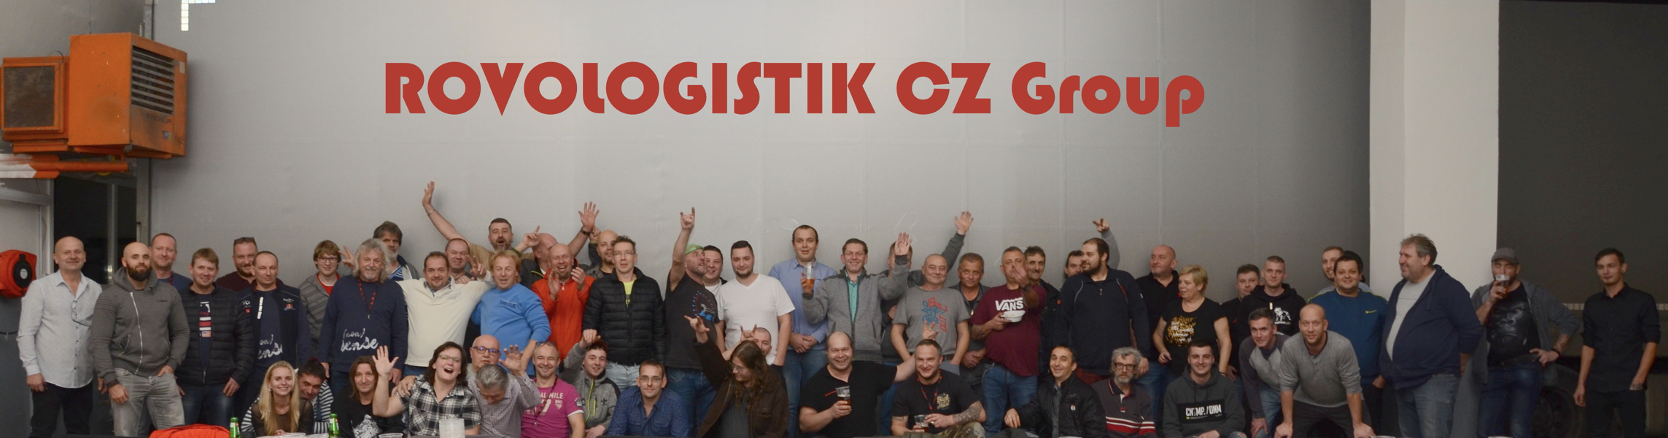 Rovologistik CZ Group, SE